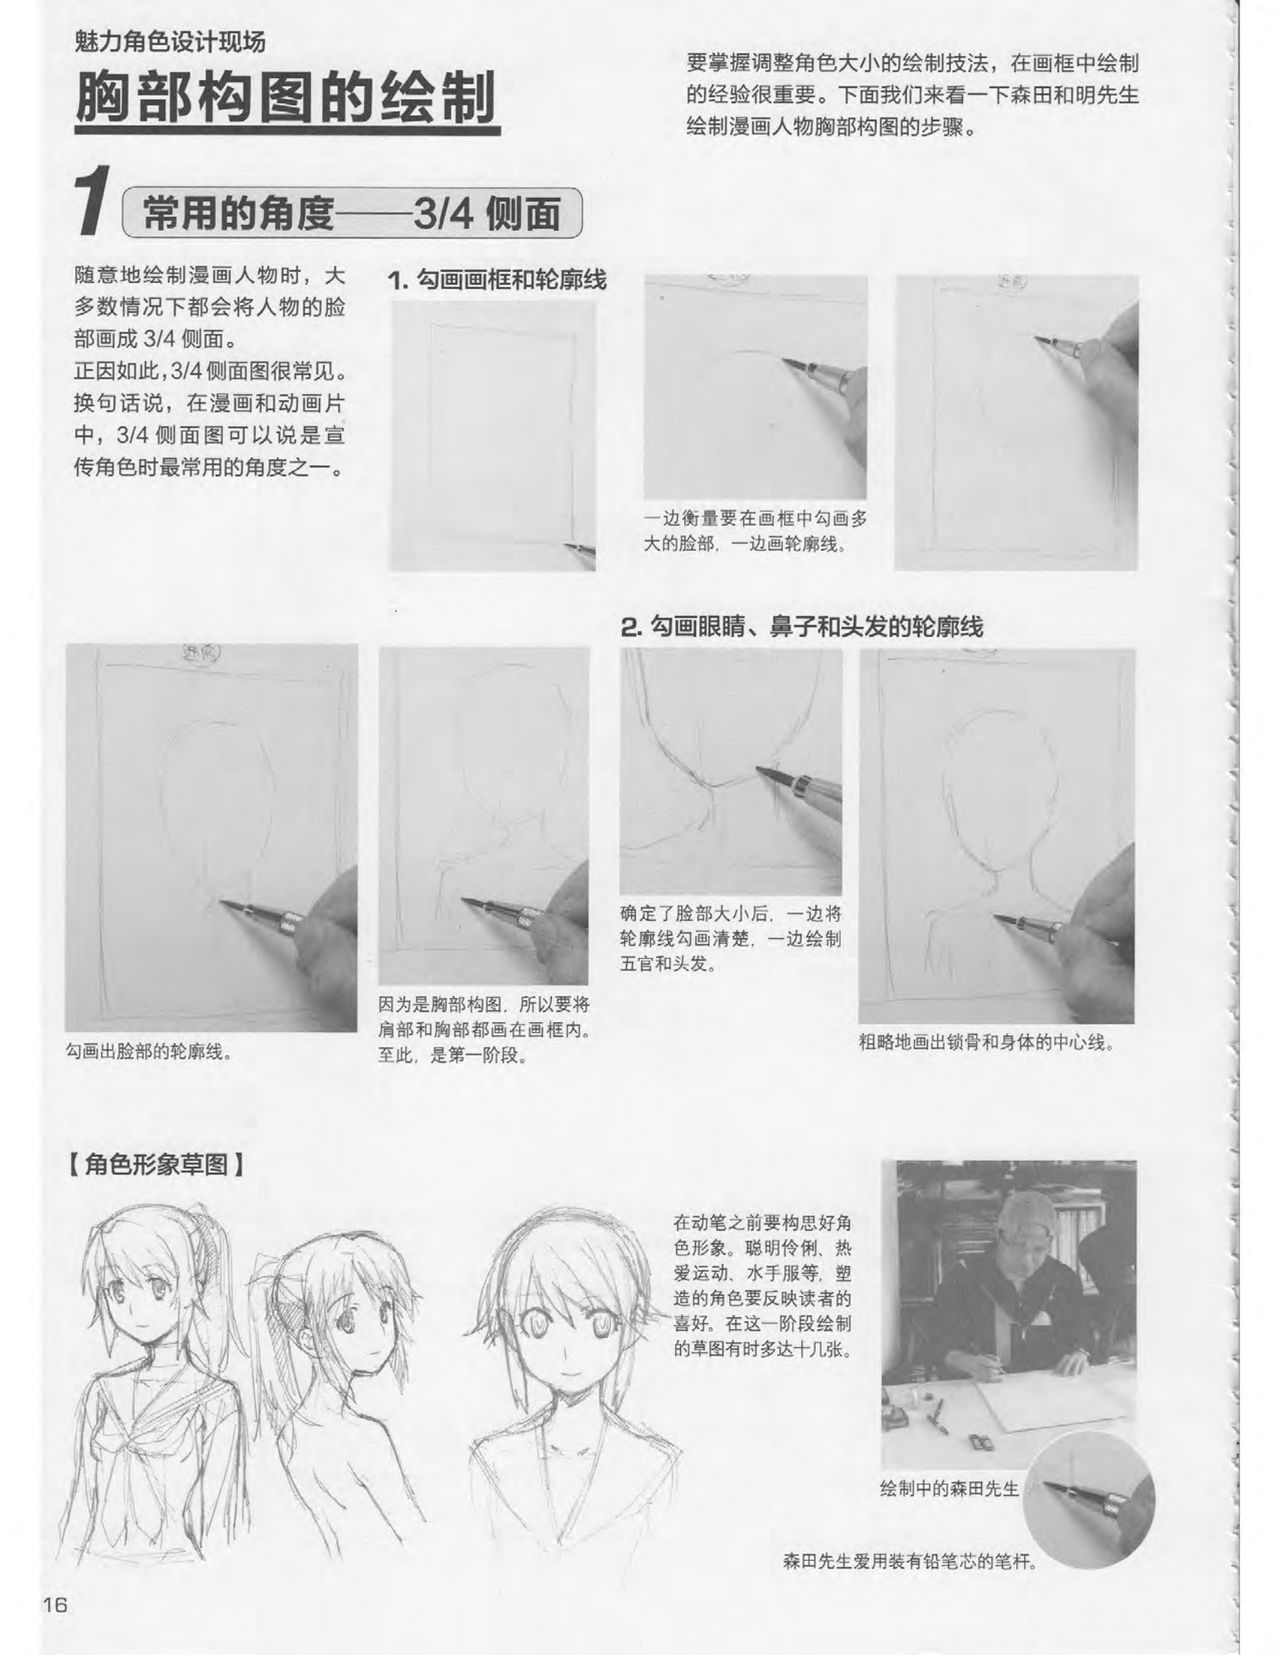 Japanese Manga Master Lecture 3: Lin Akira and Kakumaru Maru Talk About Glamorous Character Modeling 16